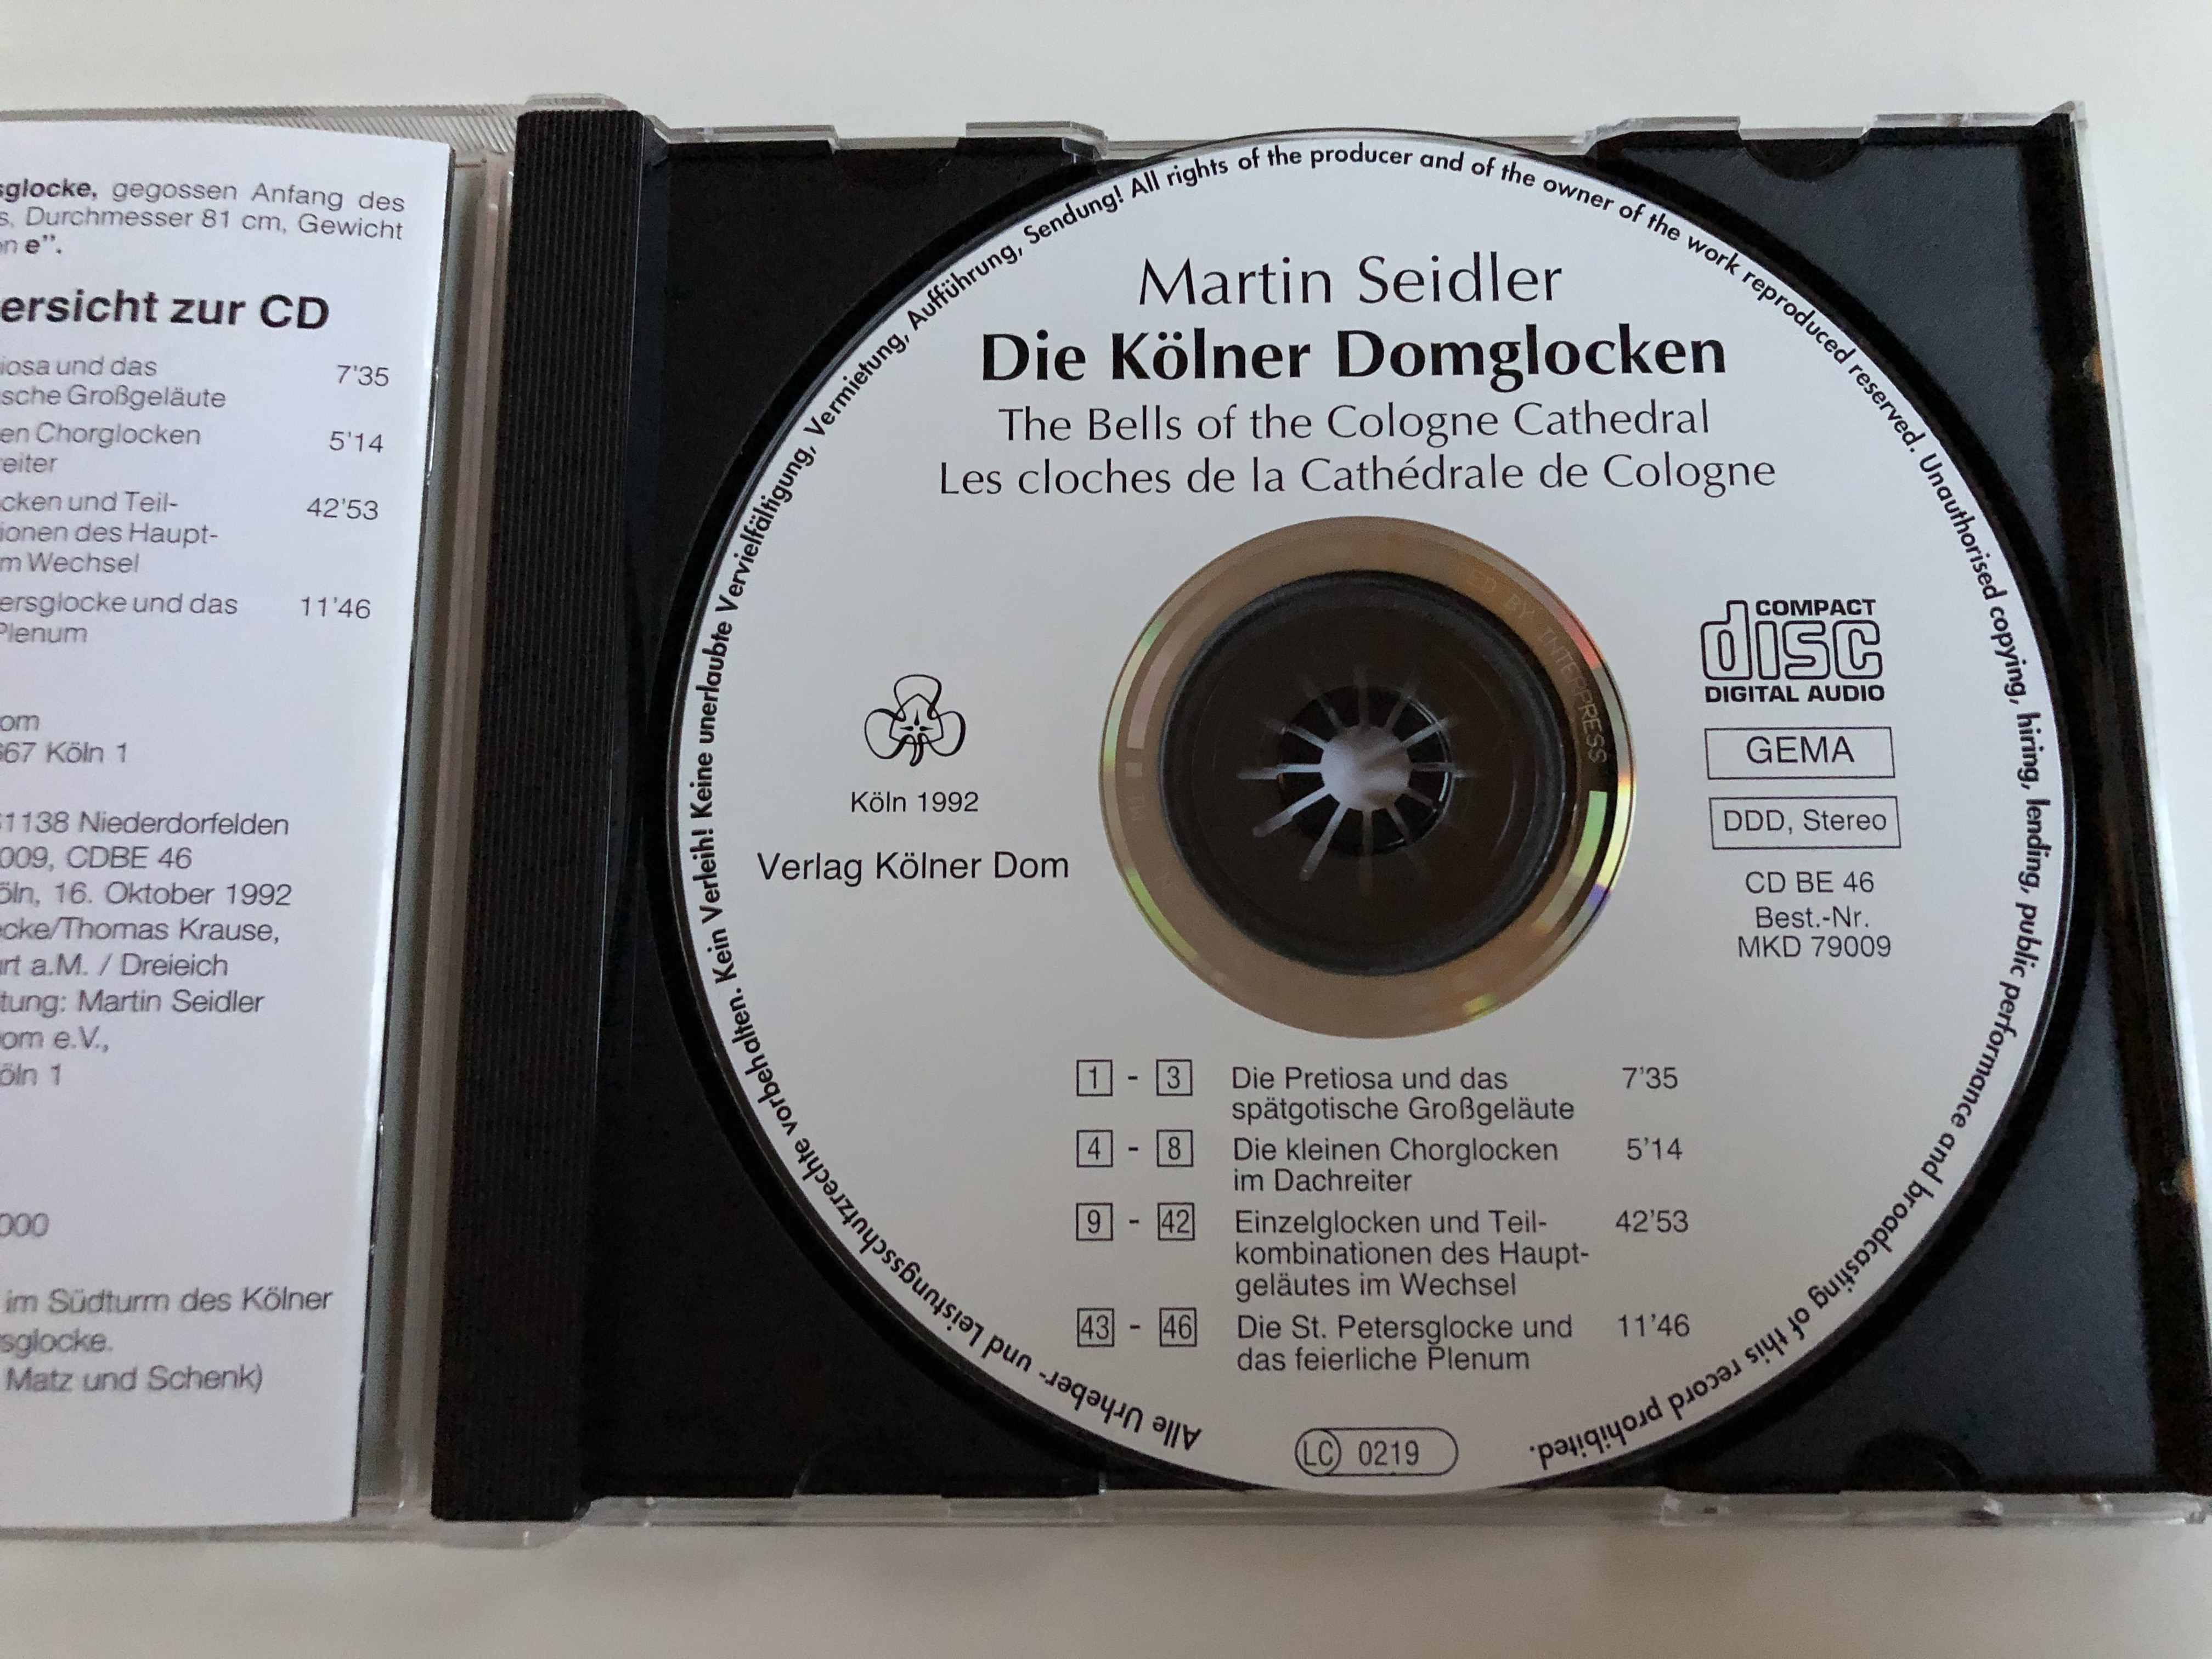 martin-seidler-die-k-lner-domglocken-verlag-k-lner-dom-audio-cd-1992-stereo-mkd-79009-18-.jpg